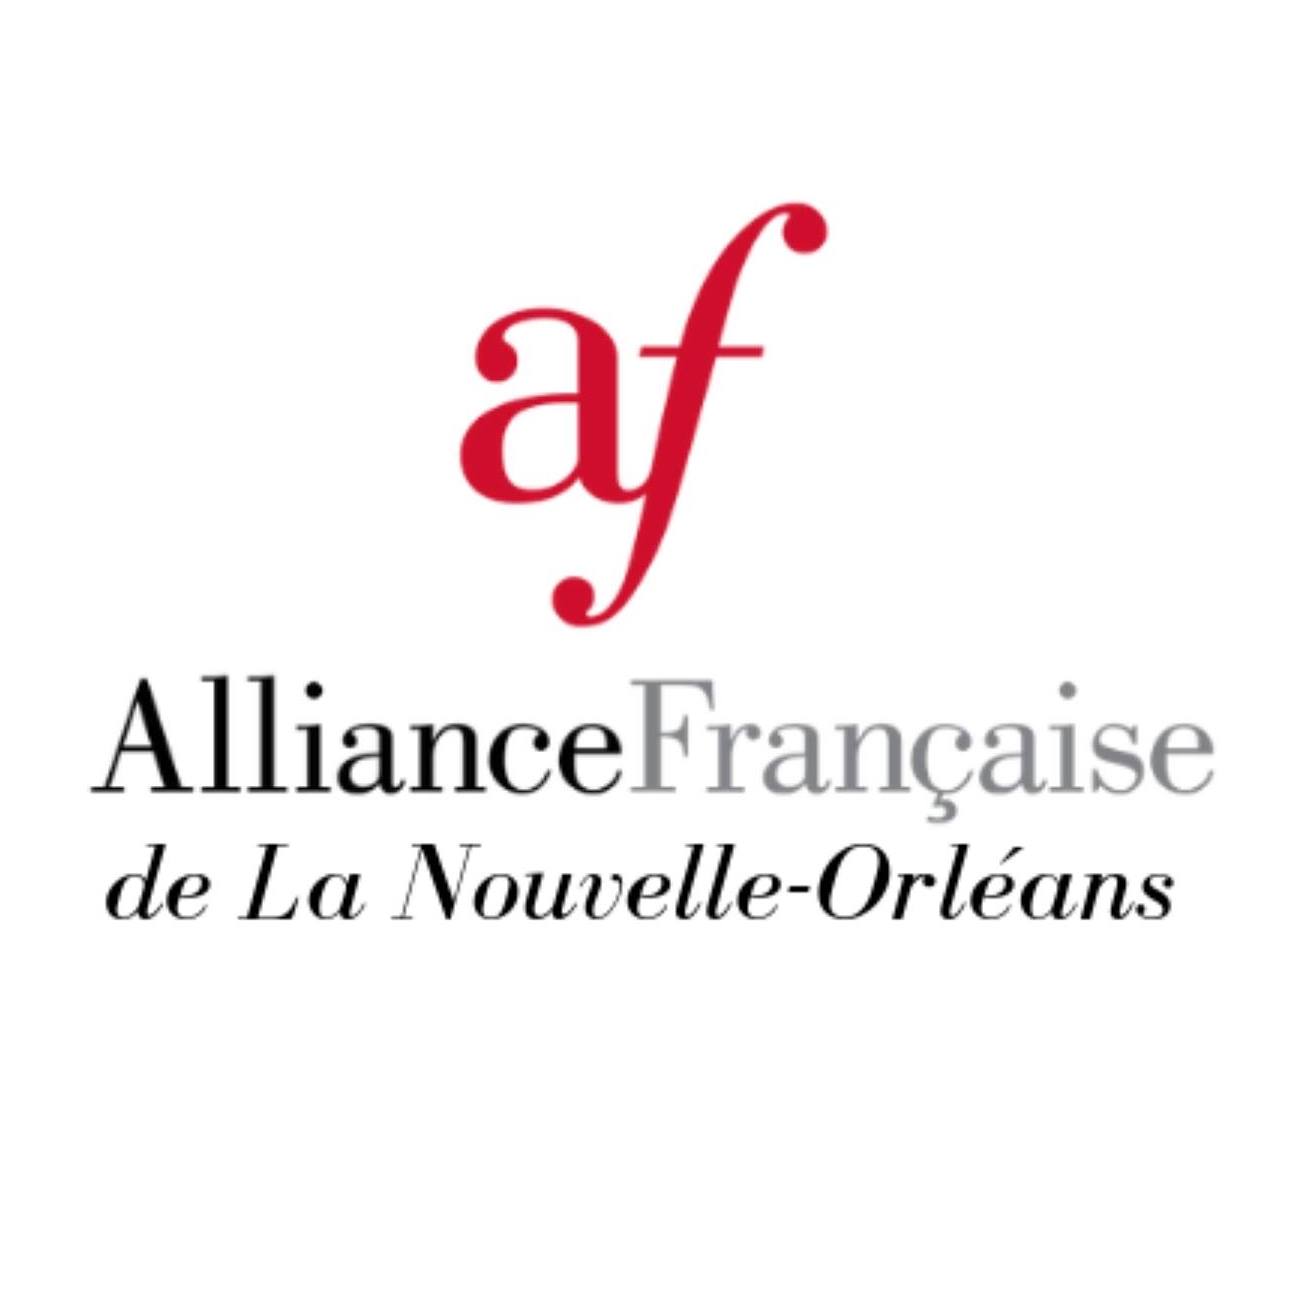 Alliance Francaise de la Nouvelle Orléans - French organization in New Orleans LA